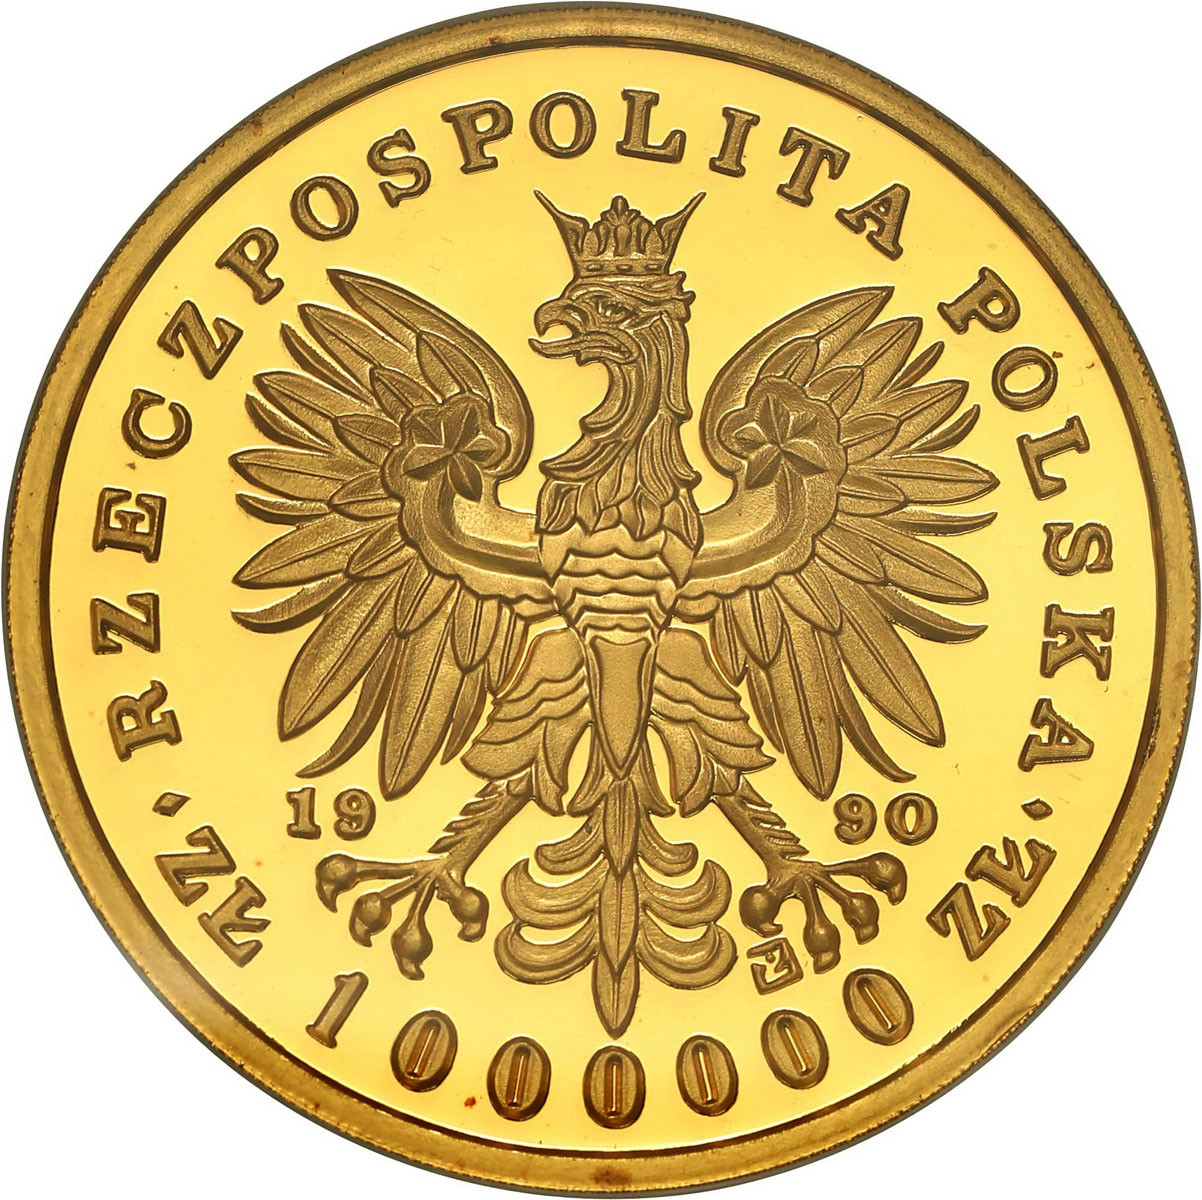 TRYPTYK Złoto 1.000.000 złotych 1990 Tadeusz Kościuszko NGC PF67 ULTRA CAMEO (MAX) - NAKŁAD 1 SZTUKA! 12 Uncji Złota